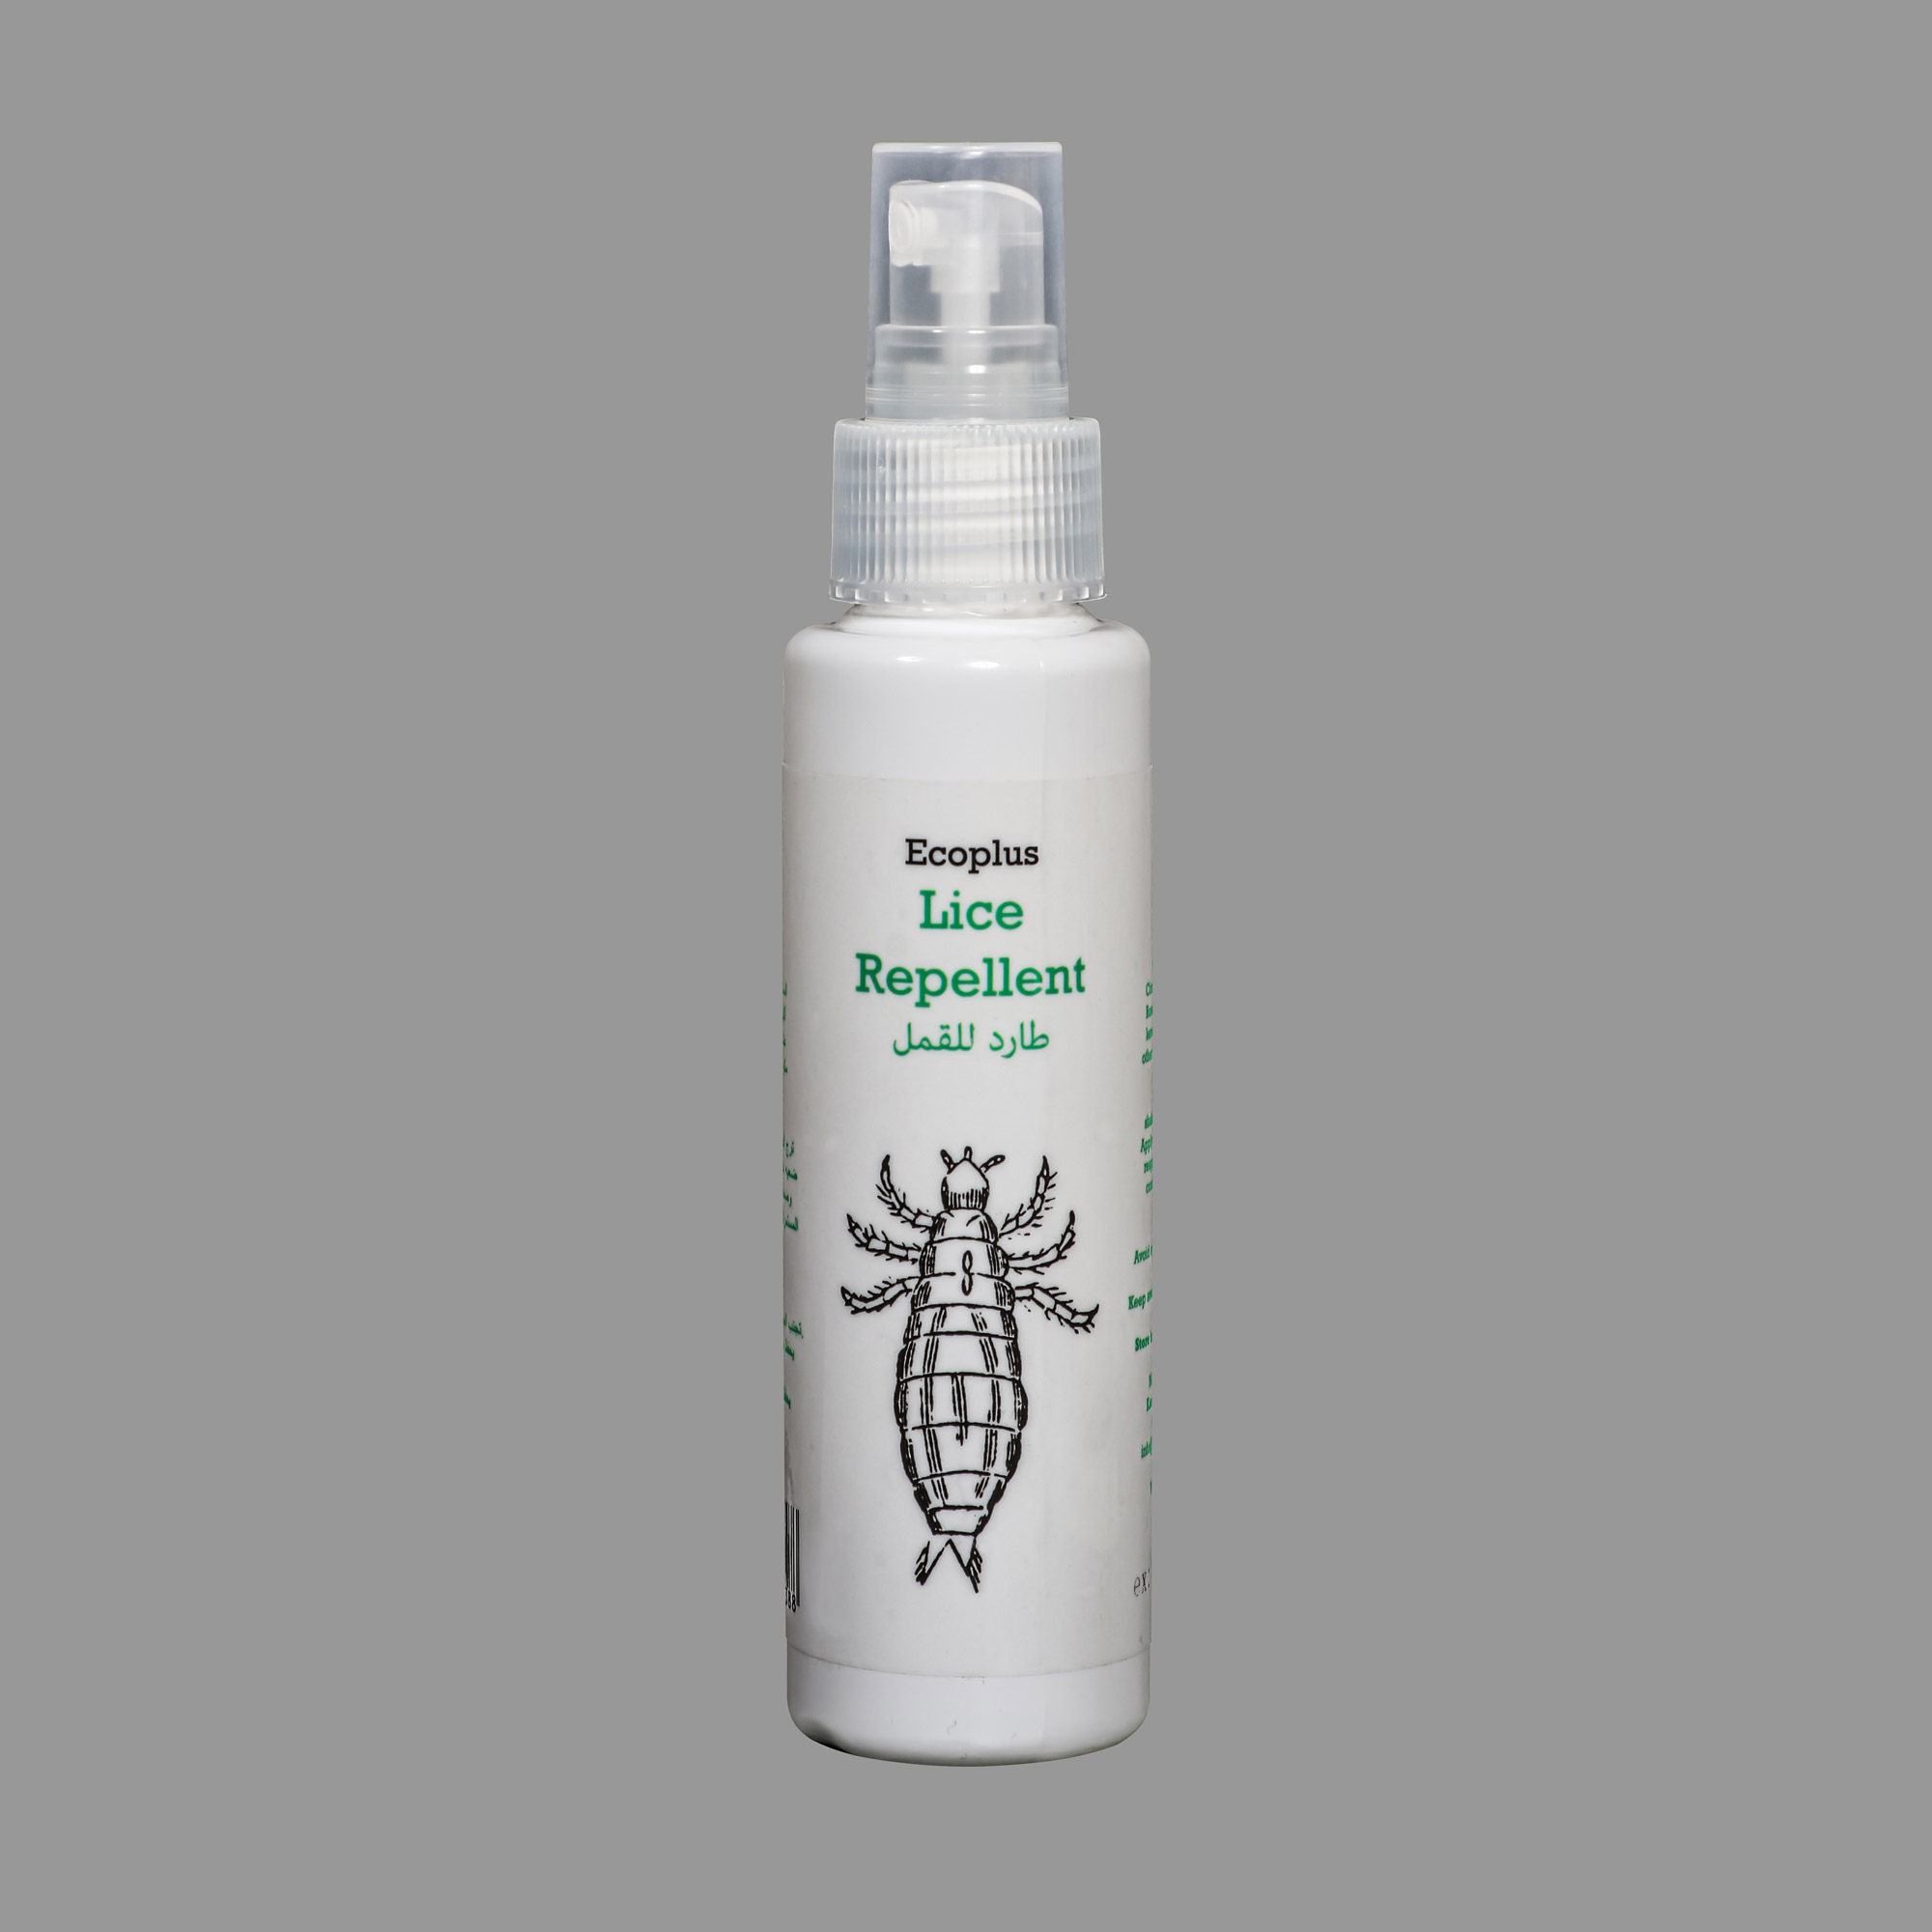 Ecoplus_Lice Repellent